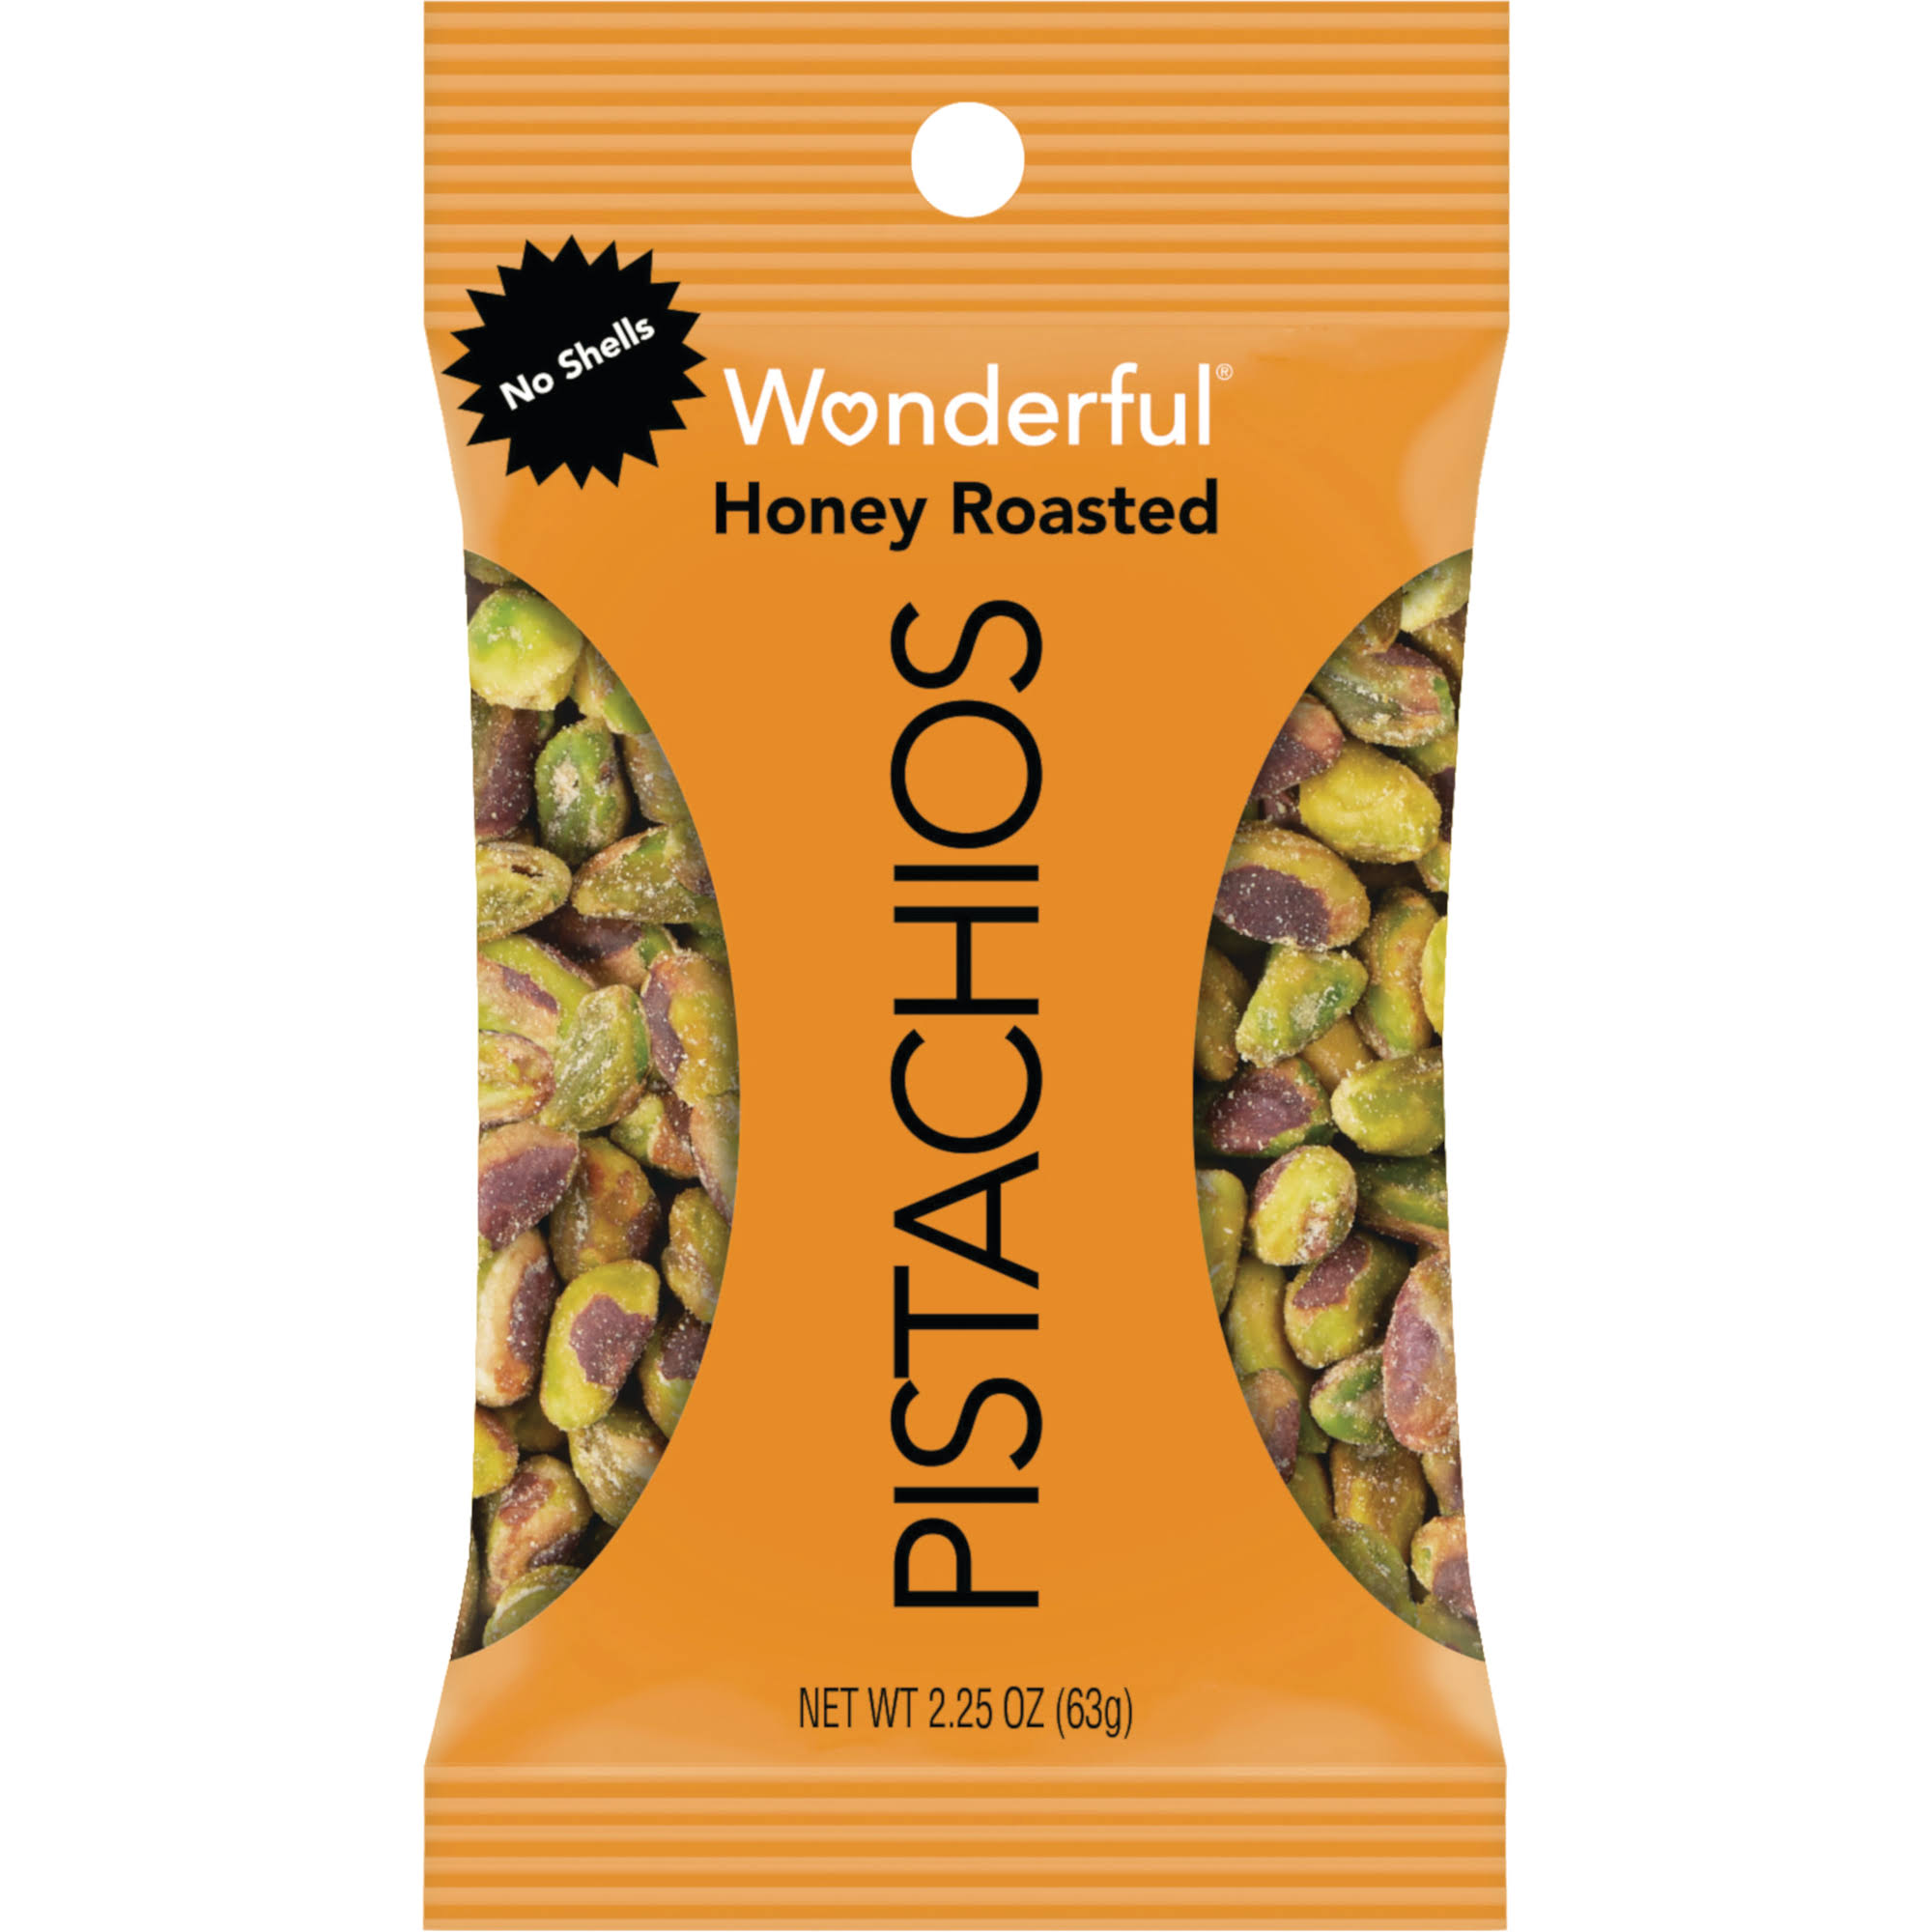 Wonderful No Shells Pistachios - Honey Roasted, 2.25oz